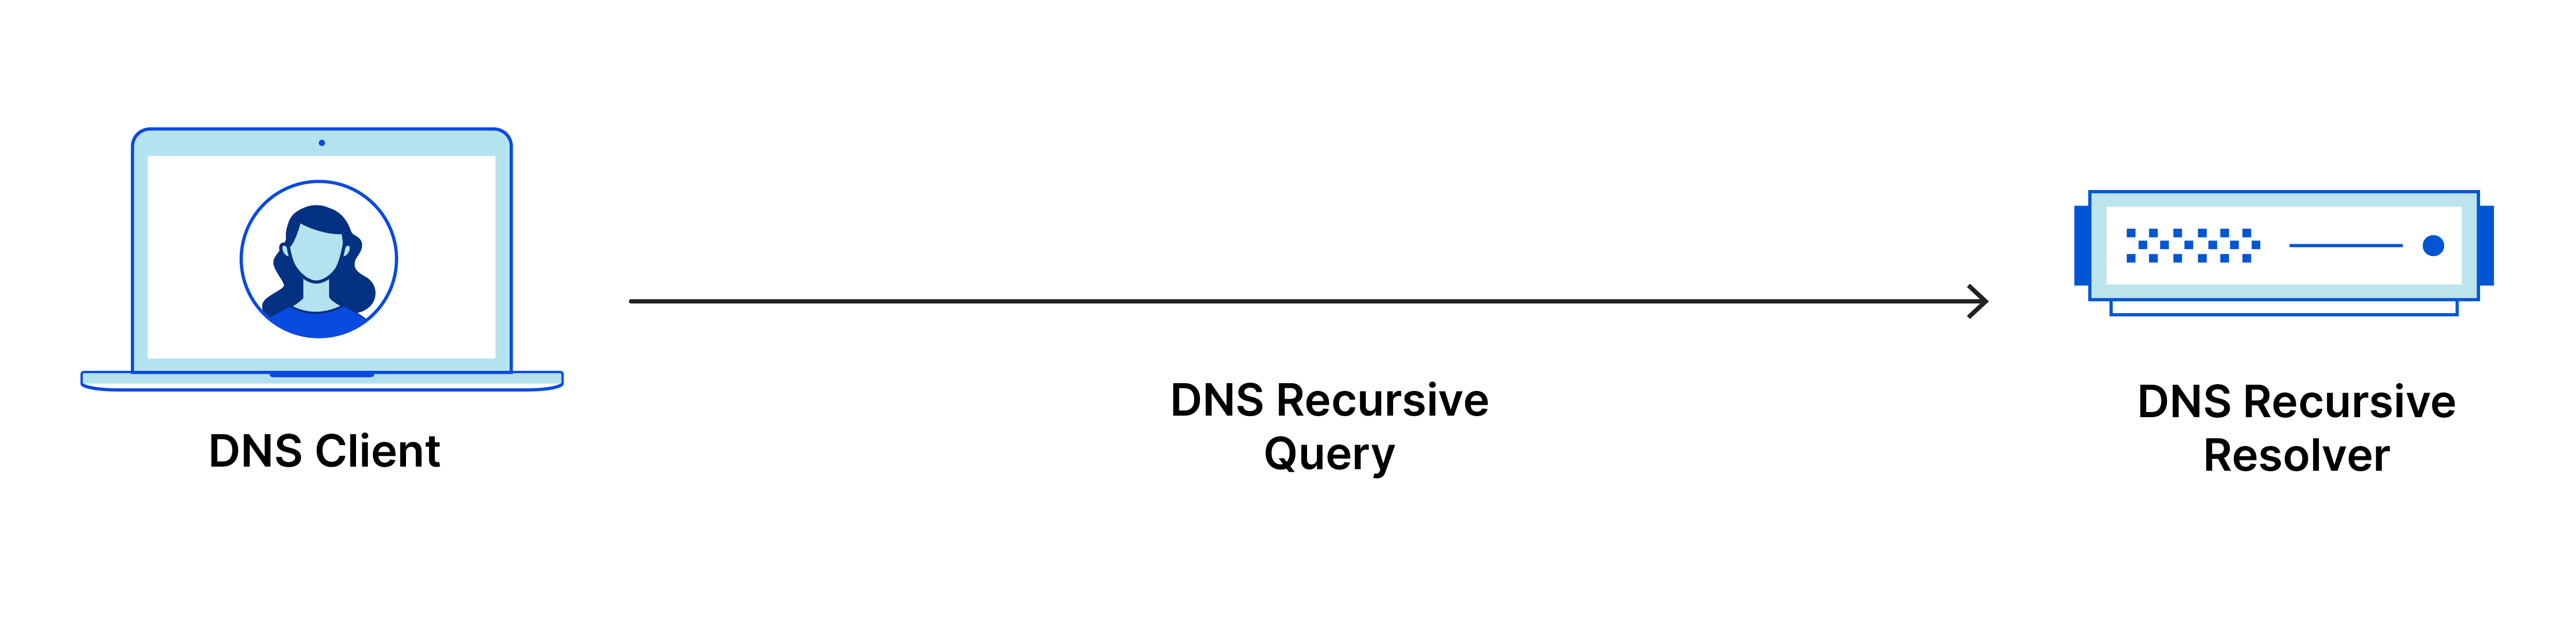 La requête récursive DNS va du client DNS au résolveur récursif DNS.